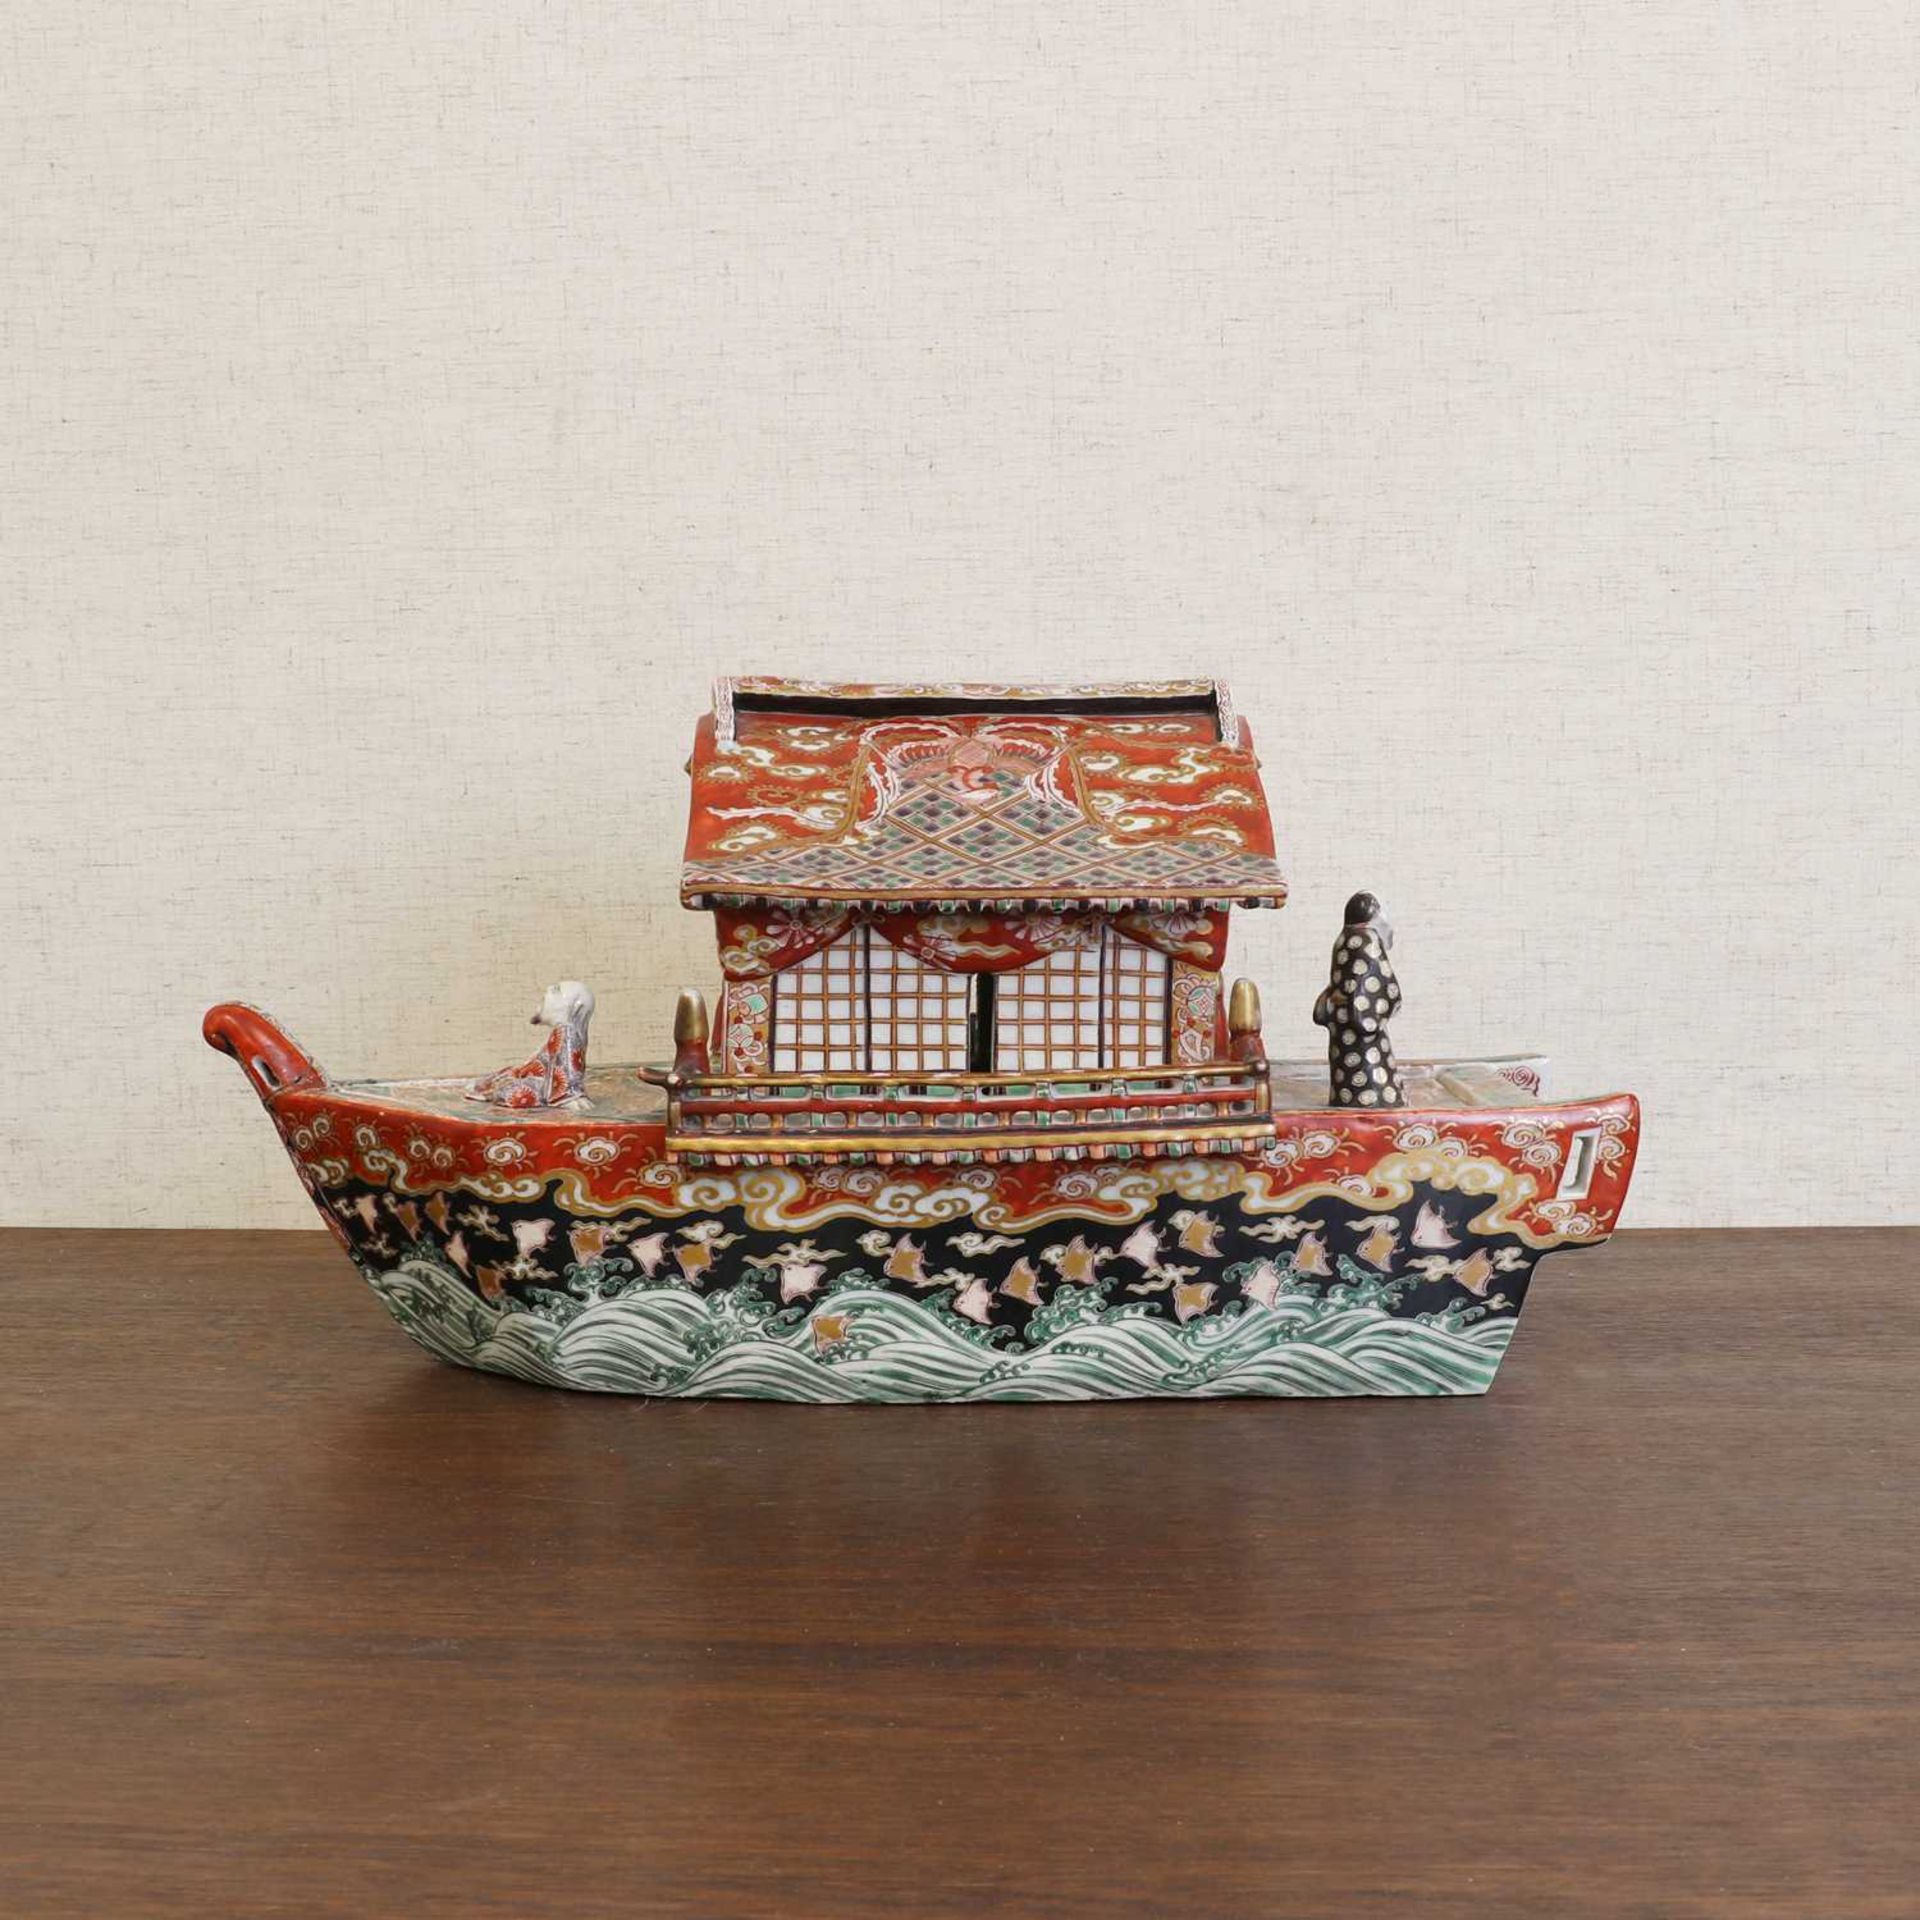 A Japanese Kutani ware junk boat, - Image 5 of 12